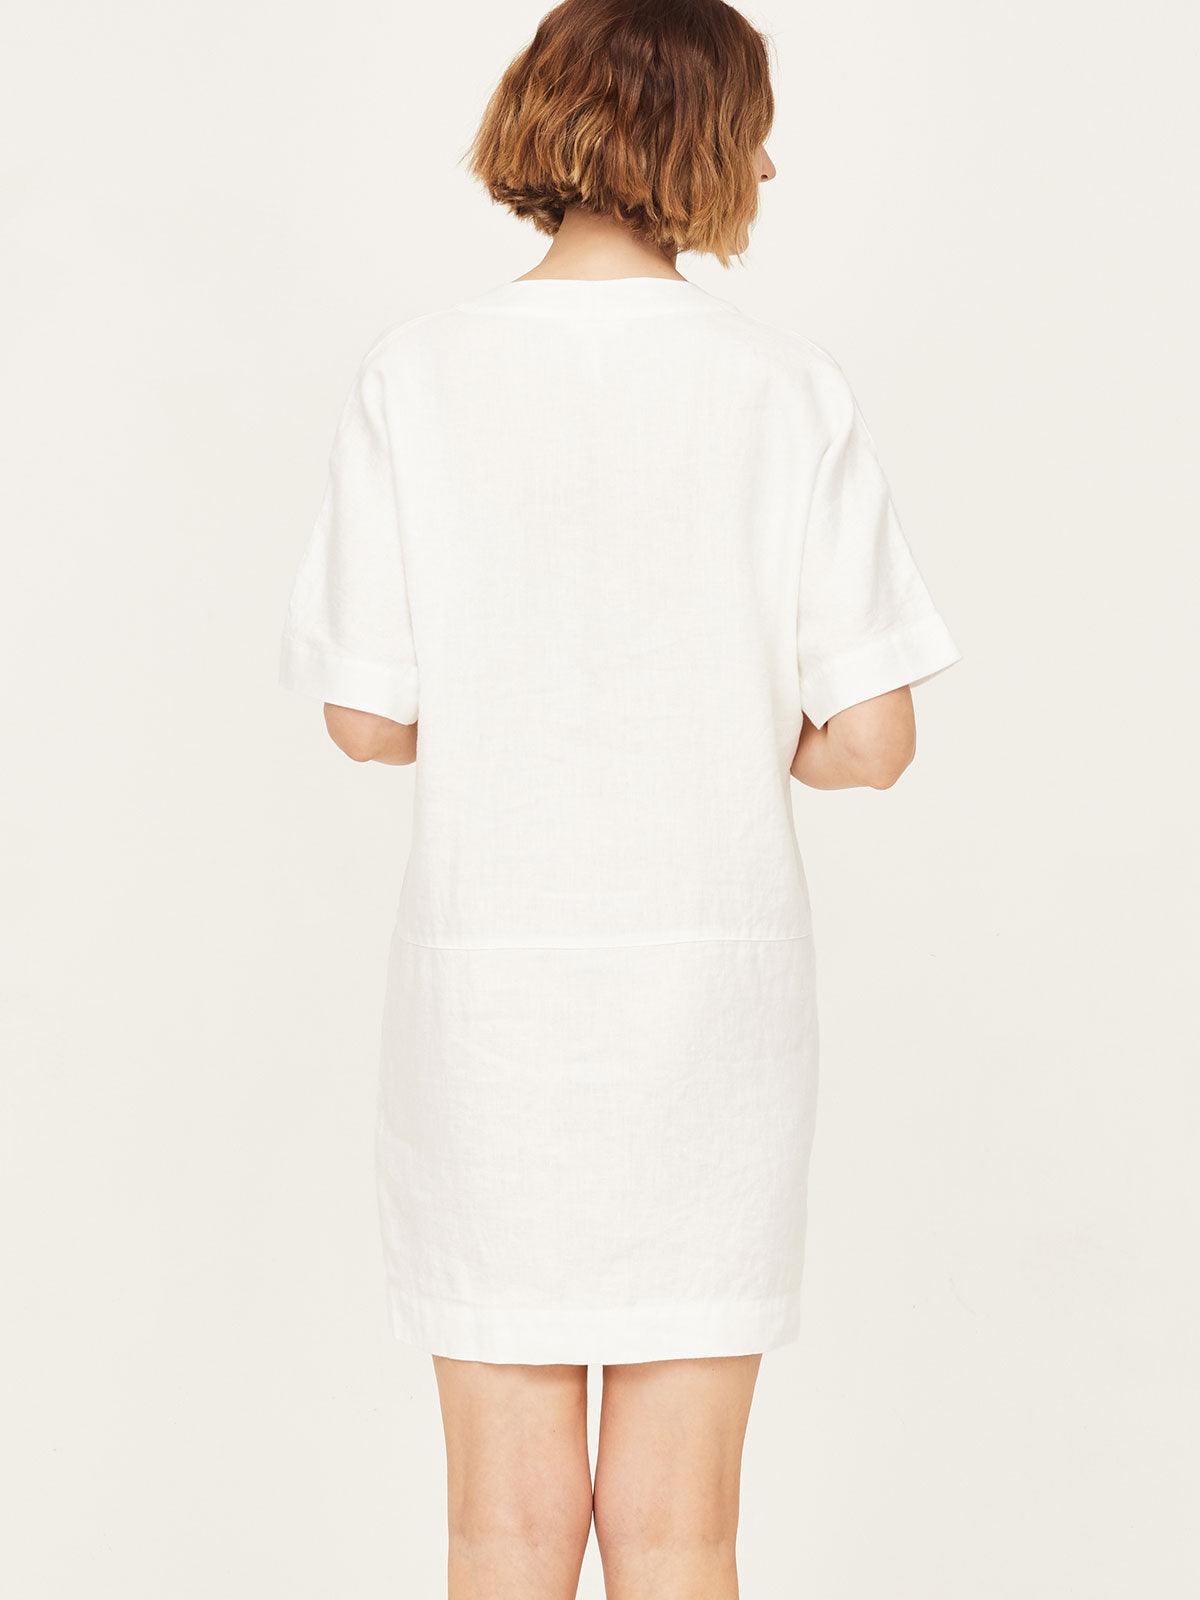 100% Hemp Easy Tunic Dress - White - Thought Clothing UK